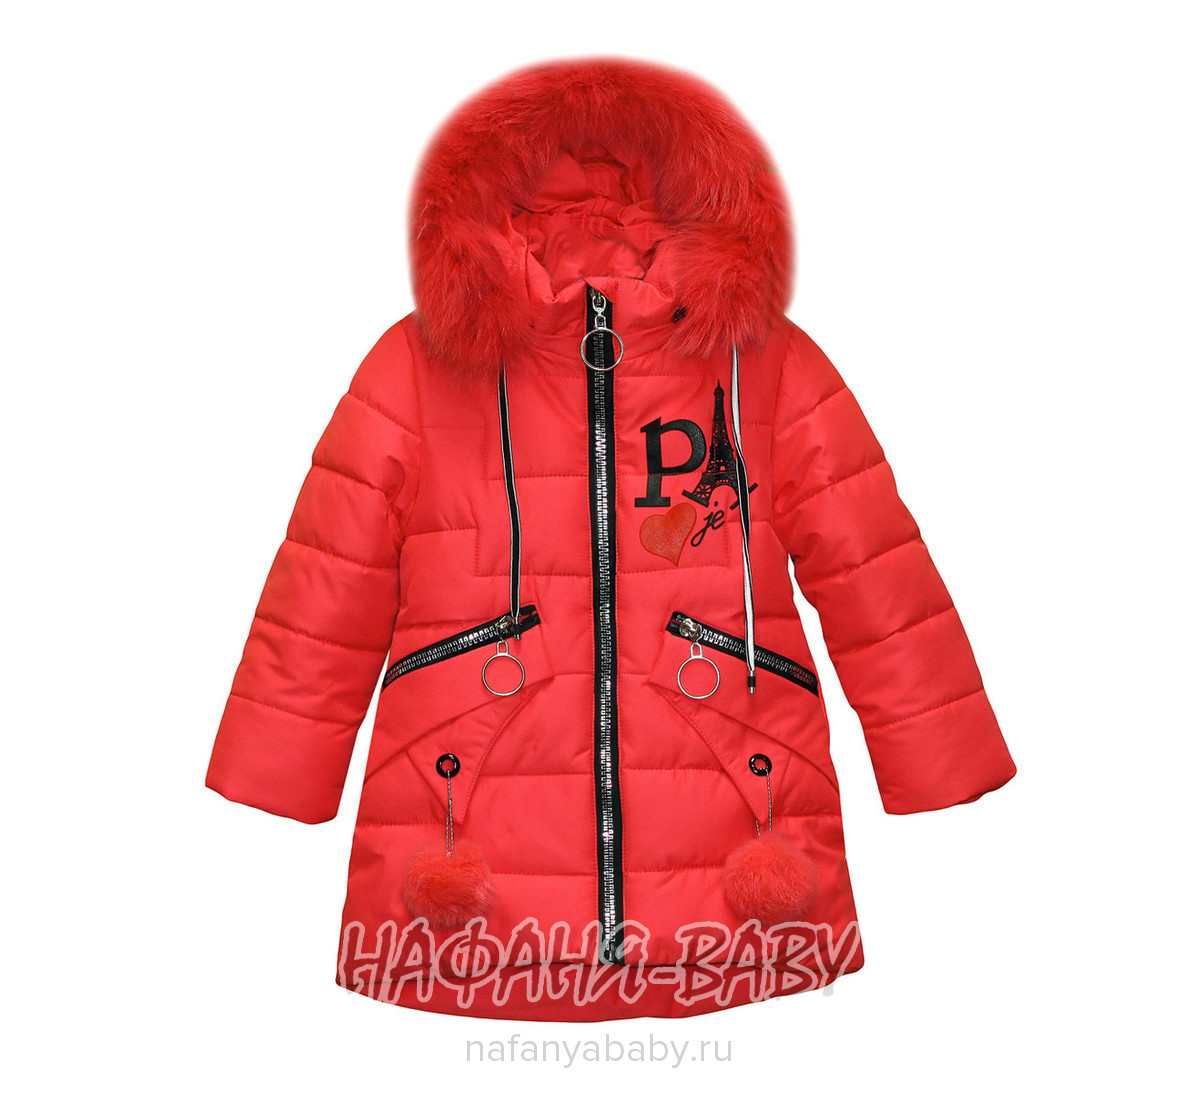 Зимняя удлиненная куртка для девочки HANYU арт: 804, 5-9 лет, оптом Китай (Пекин)